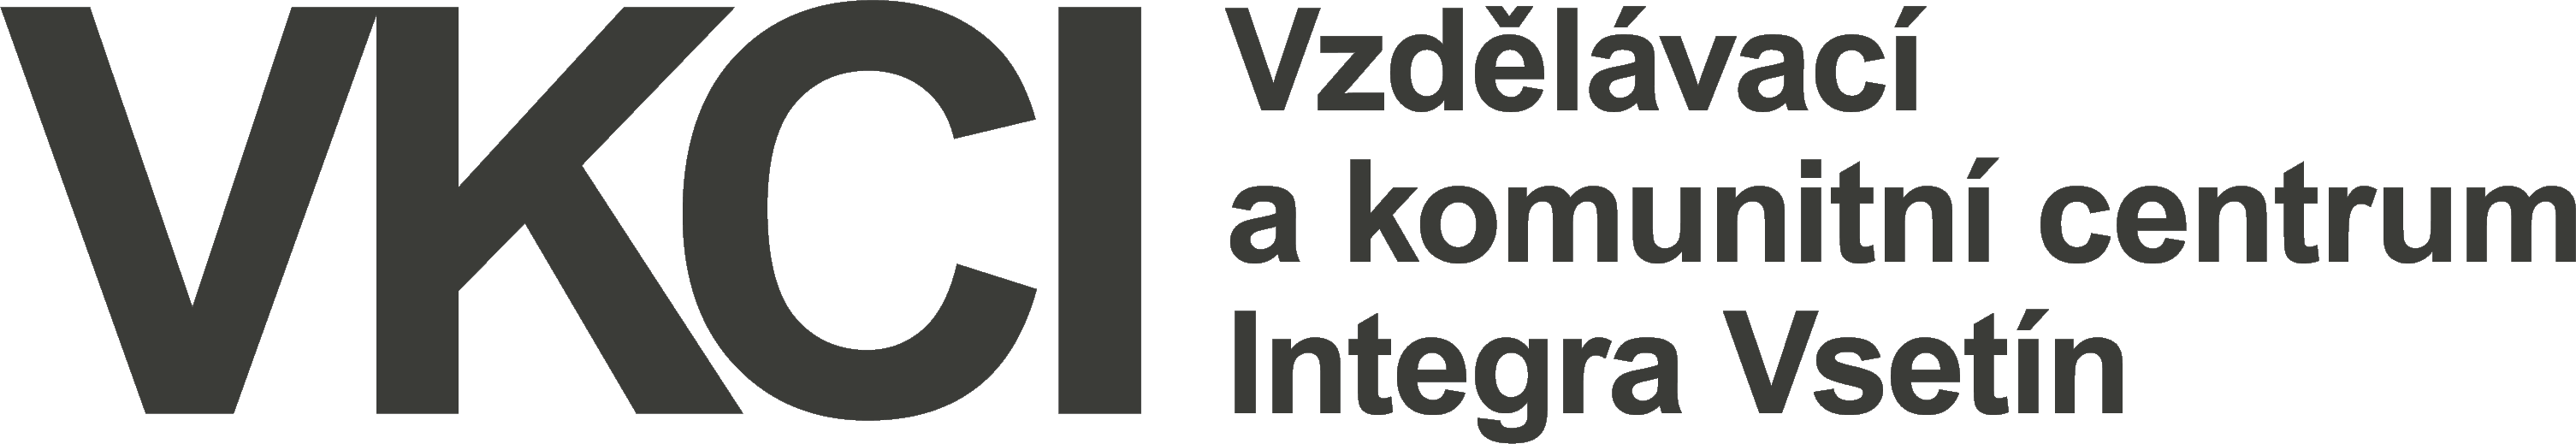 Vzdělávací a komunitní centrum integra Vsetín o.p.s.